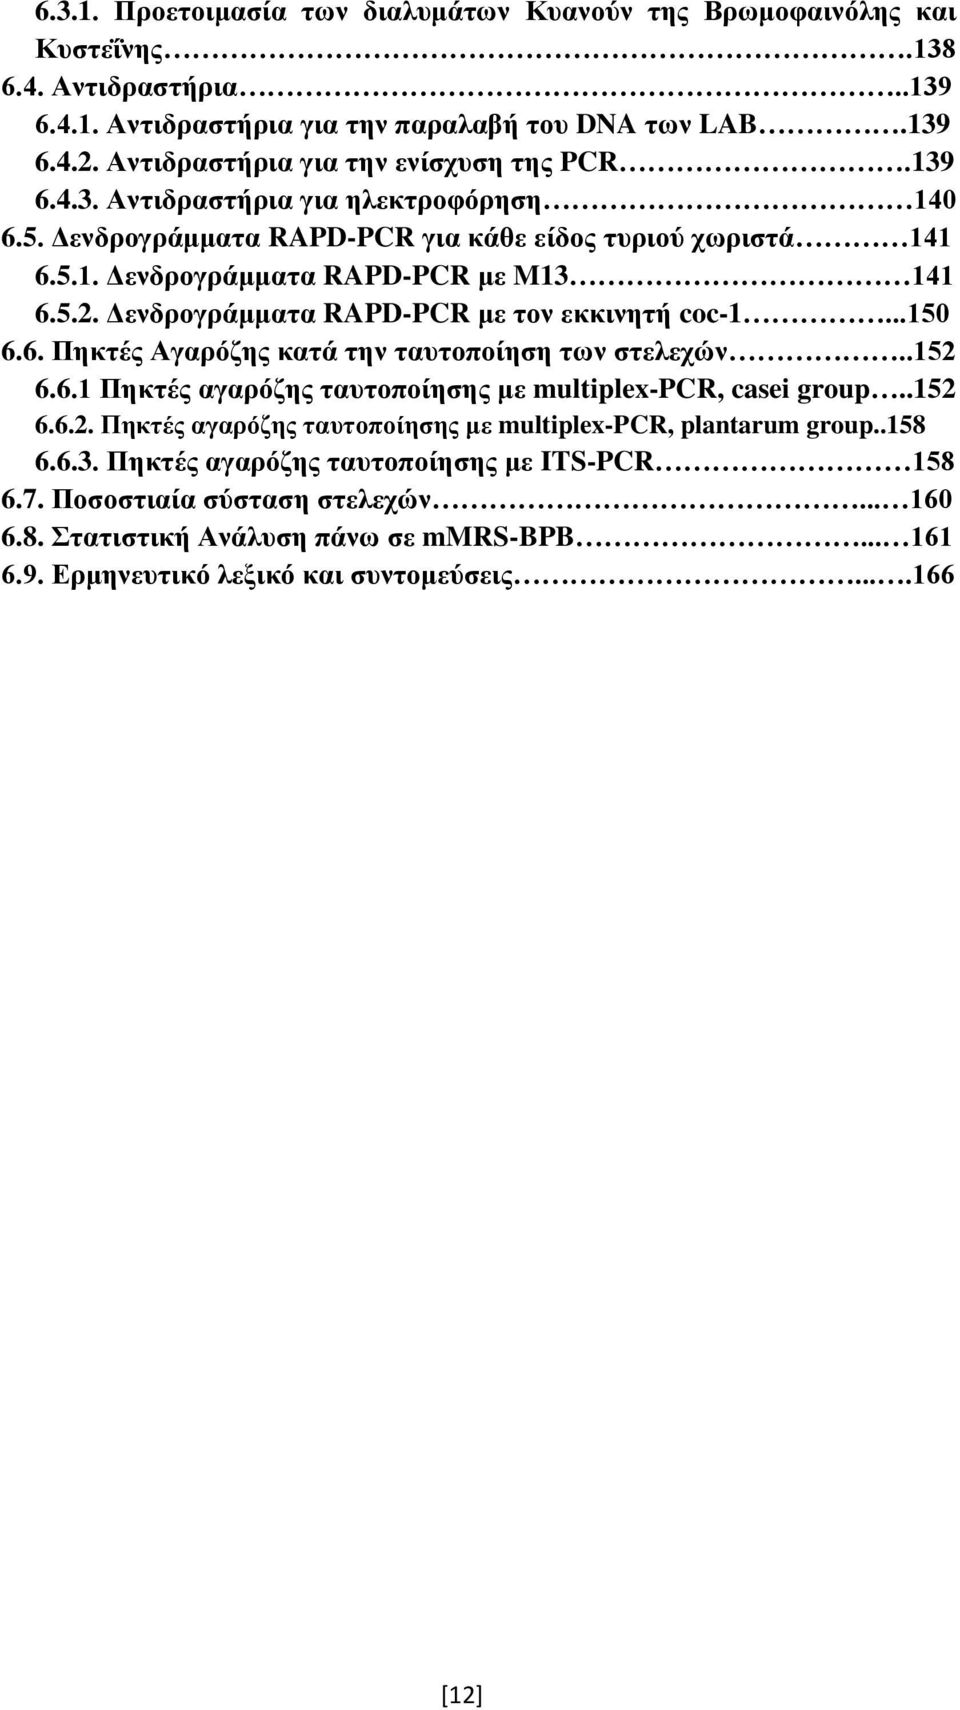 Δενδρογράμματα RAPD-PCR με τον εκκινητή coc-1...150 6.6. Πηκτές Αγαρόζης κατά την ταυτοποίηση των στελεχών..152 6.6.1 Πηκτές αγαρόζης ταυτοποίησης με multiplex-pcr, casei group..152 6.6.2. Πηκτές αγαρόζης ταυτοποίησης με multiplex-pcr, plantarum group.